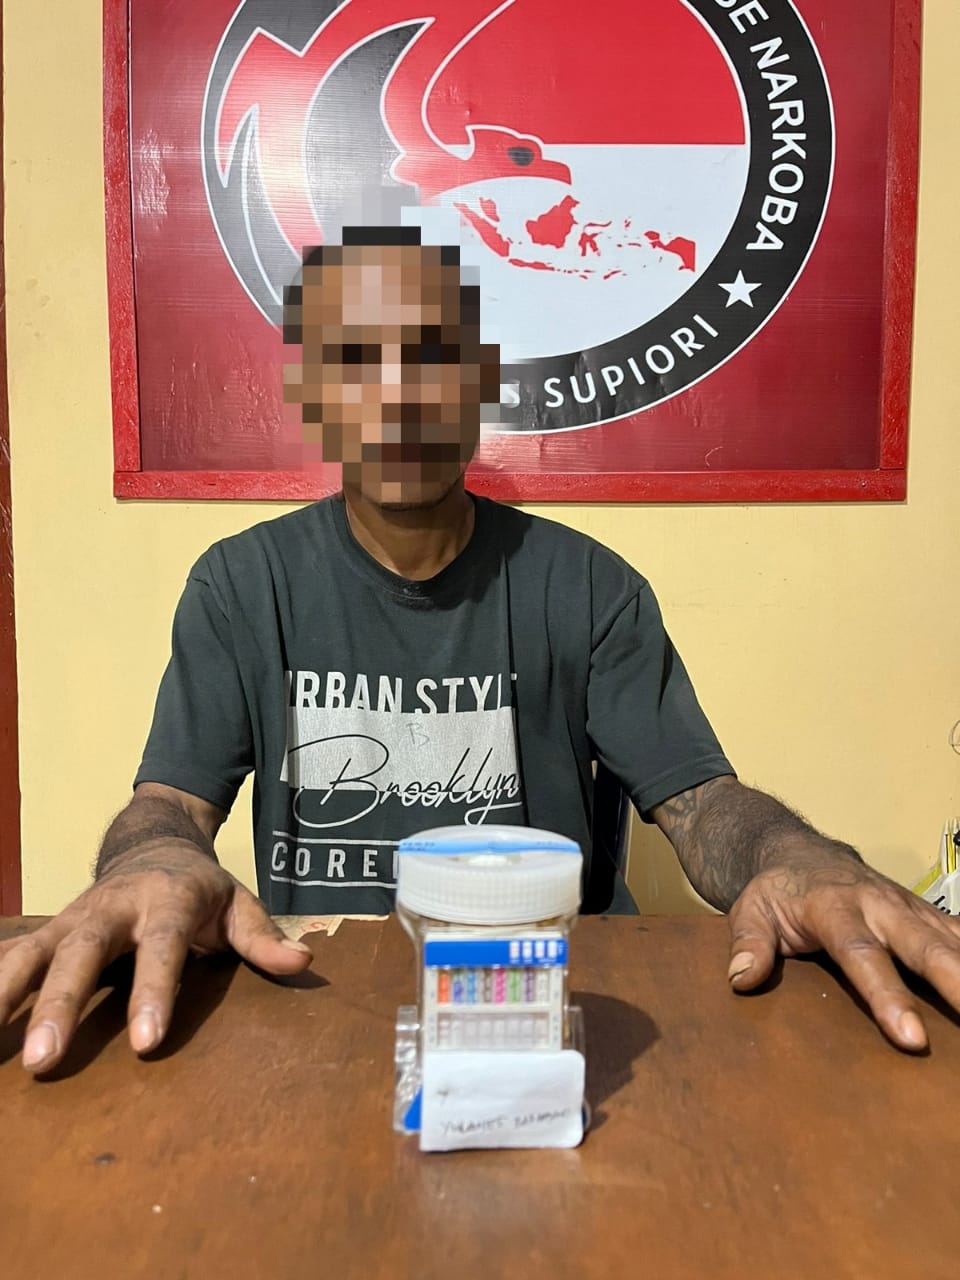 Polres Supiori Berhasil Menangkap 1 Pelaku Penyalahgunaan Narkoba